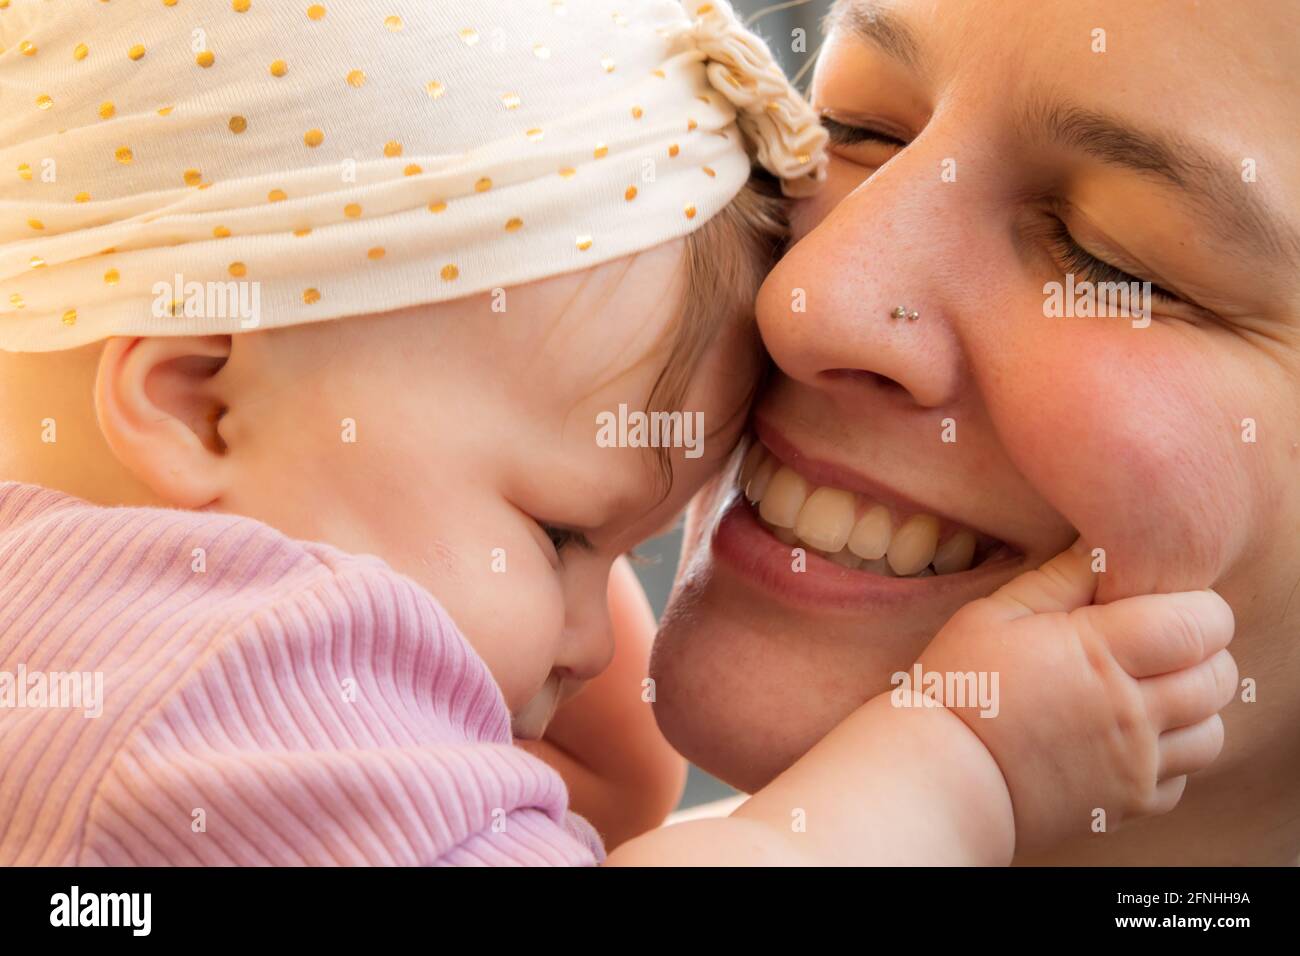 Nahaufnahme einer jungen Mutter mit einem 5 Monate alten Baby, umarmend, lächelnd, liebevoller Ausdruck. Baby mit Hut, die Wange der Mutter haltend. Stockfoto